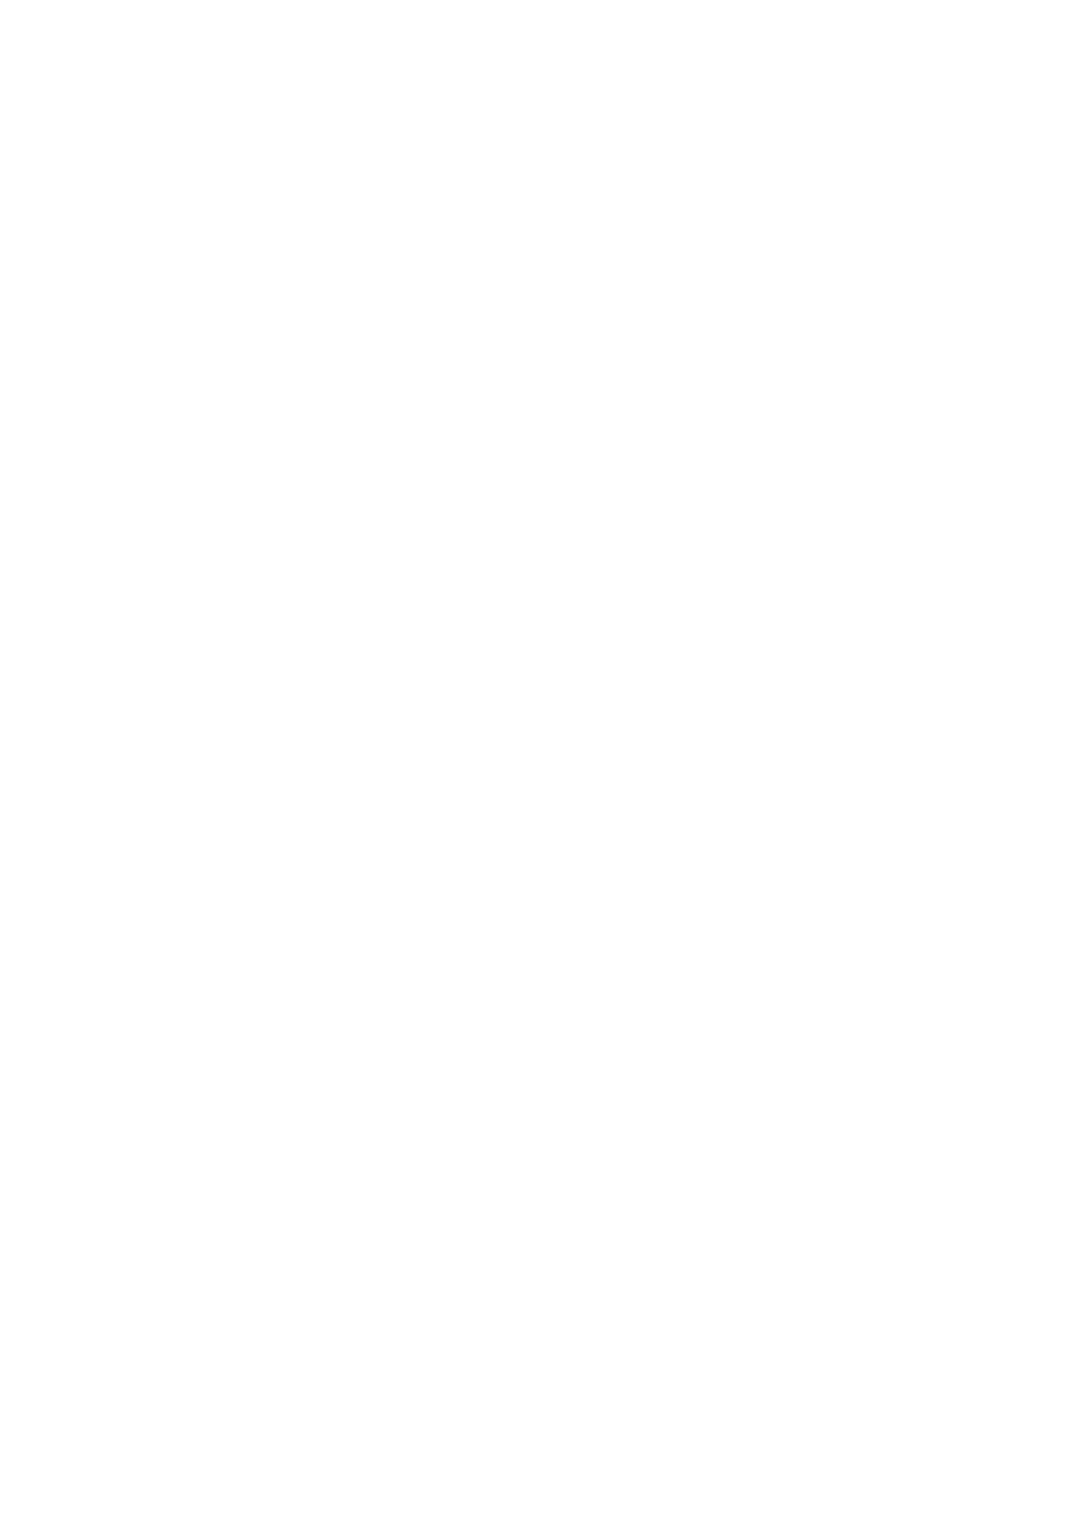 Beazley logo pour fonds sombres (PNG transparent)